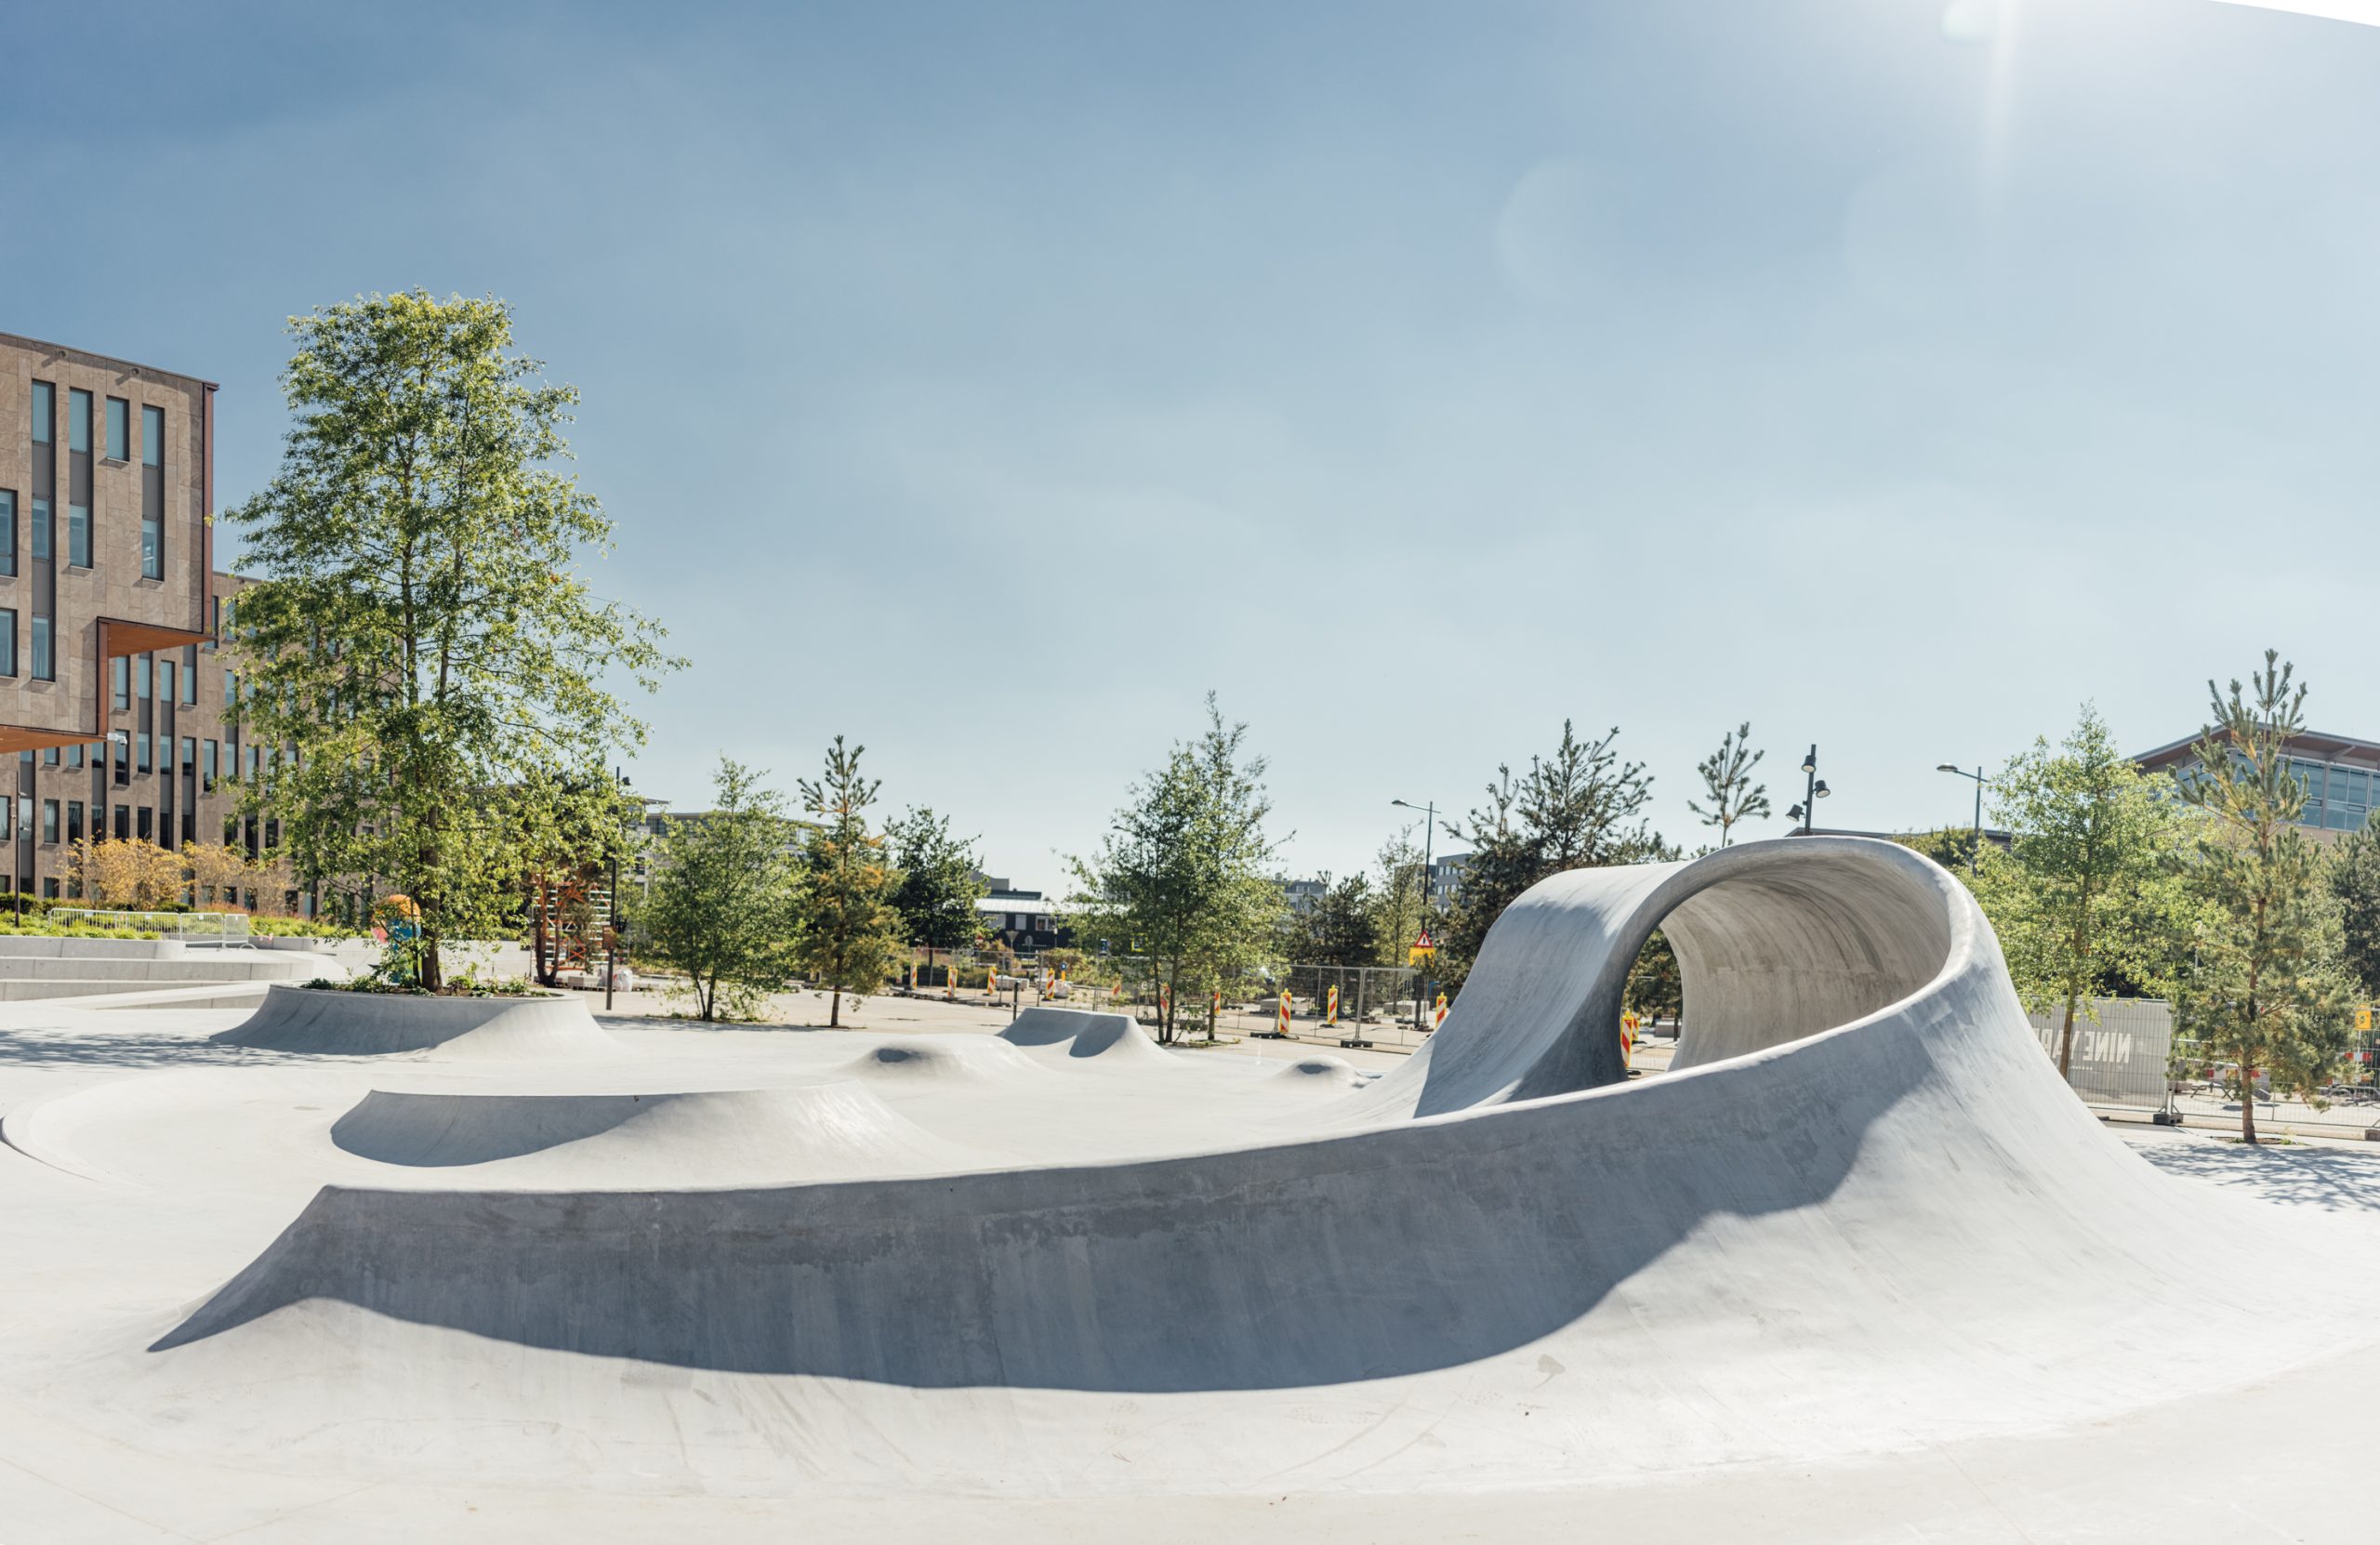 nine_yards_skatepark-co_nike-hq-hilversum-skatepark-landscape_web-9